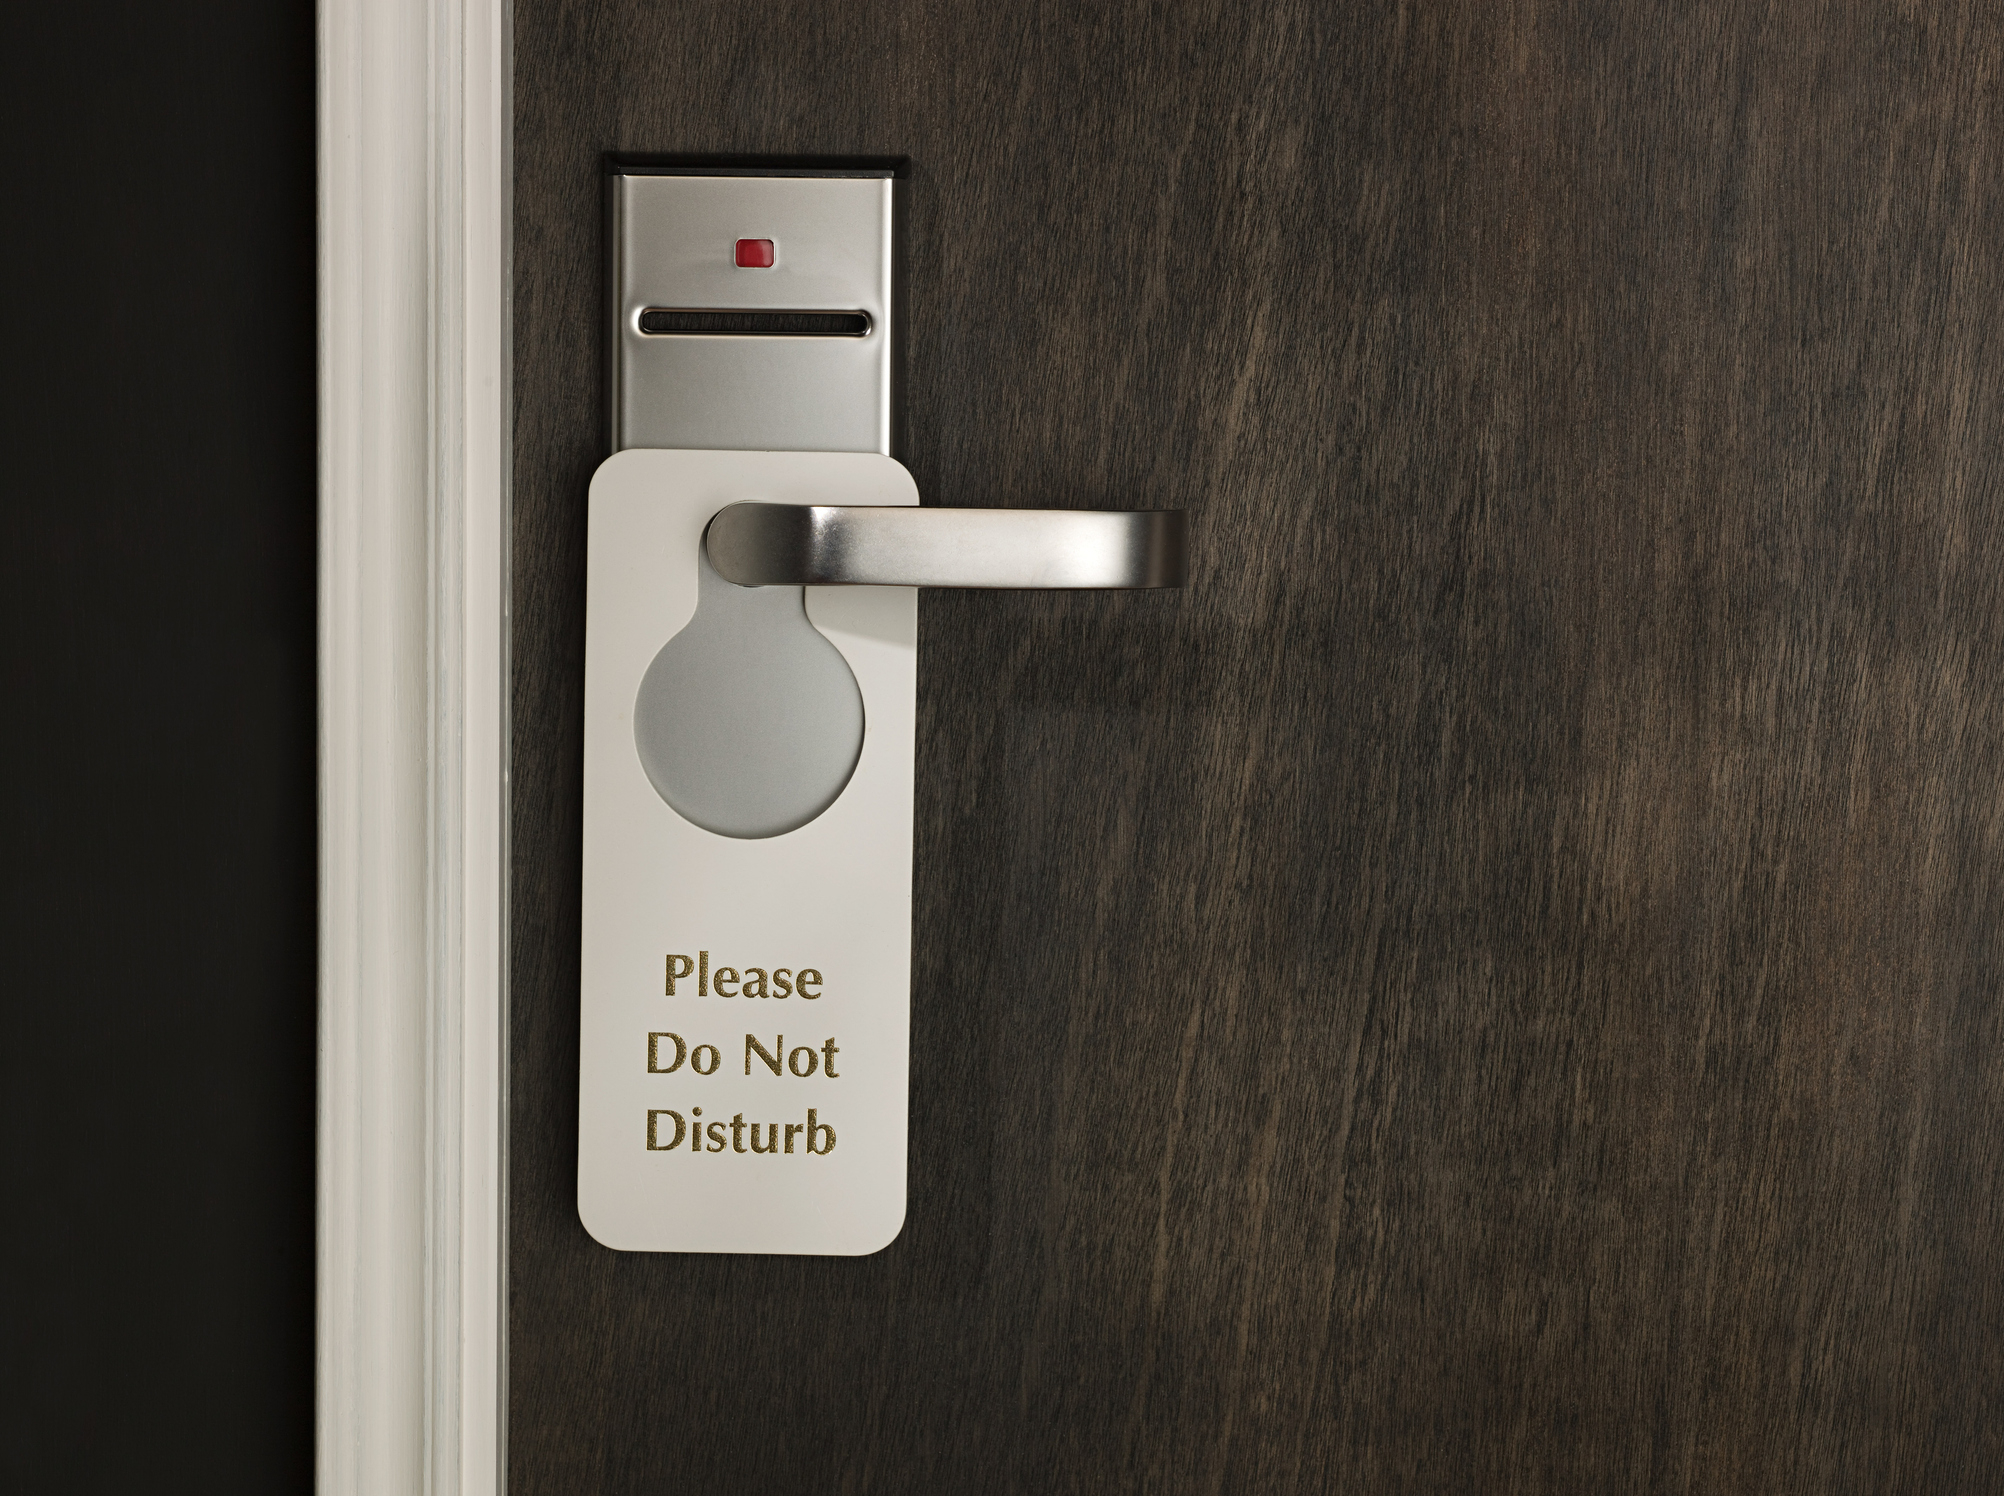 Sign on door handle reads &quot;Please Do Not Disturb&quot;